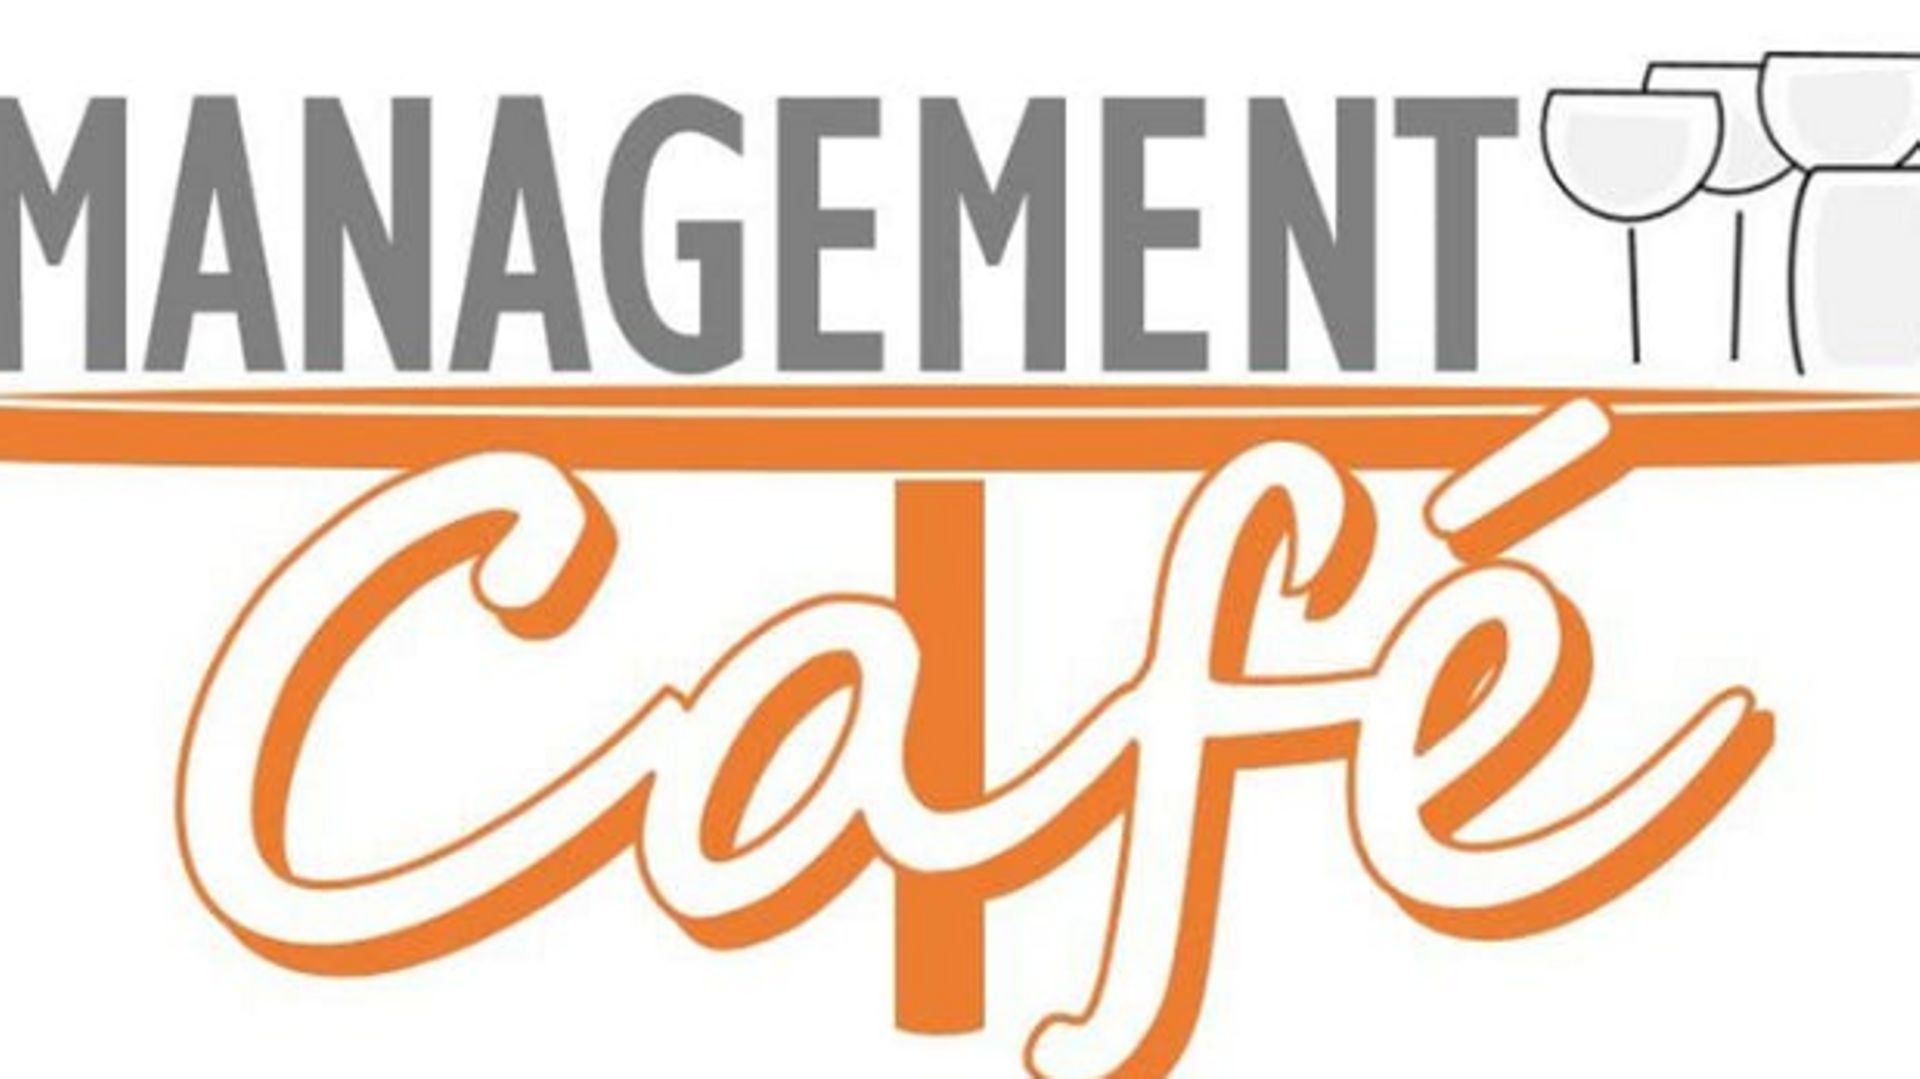 Management café